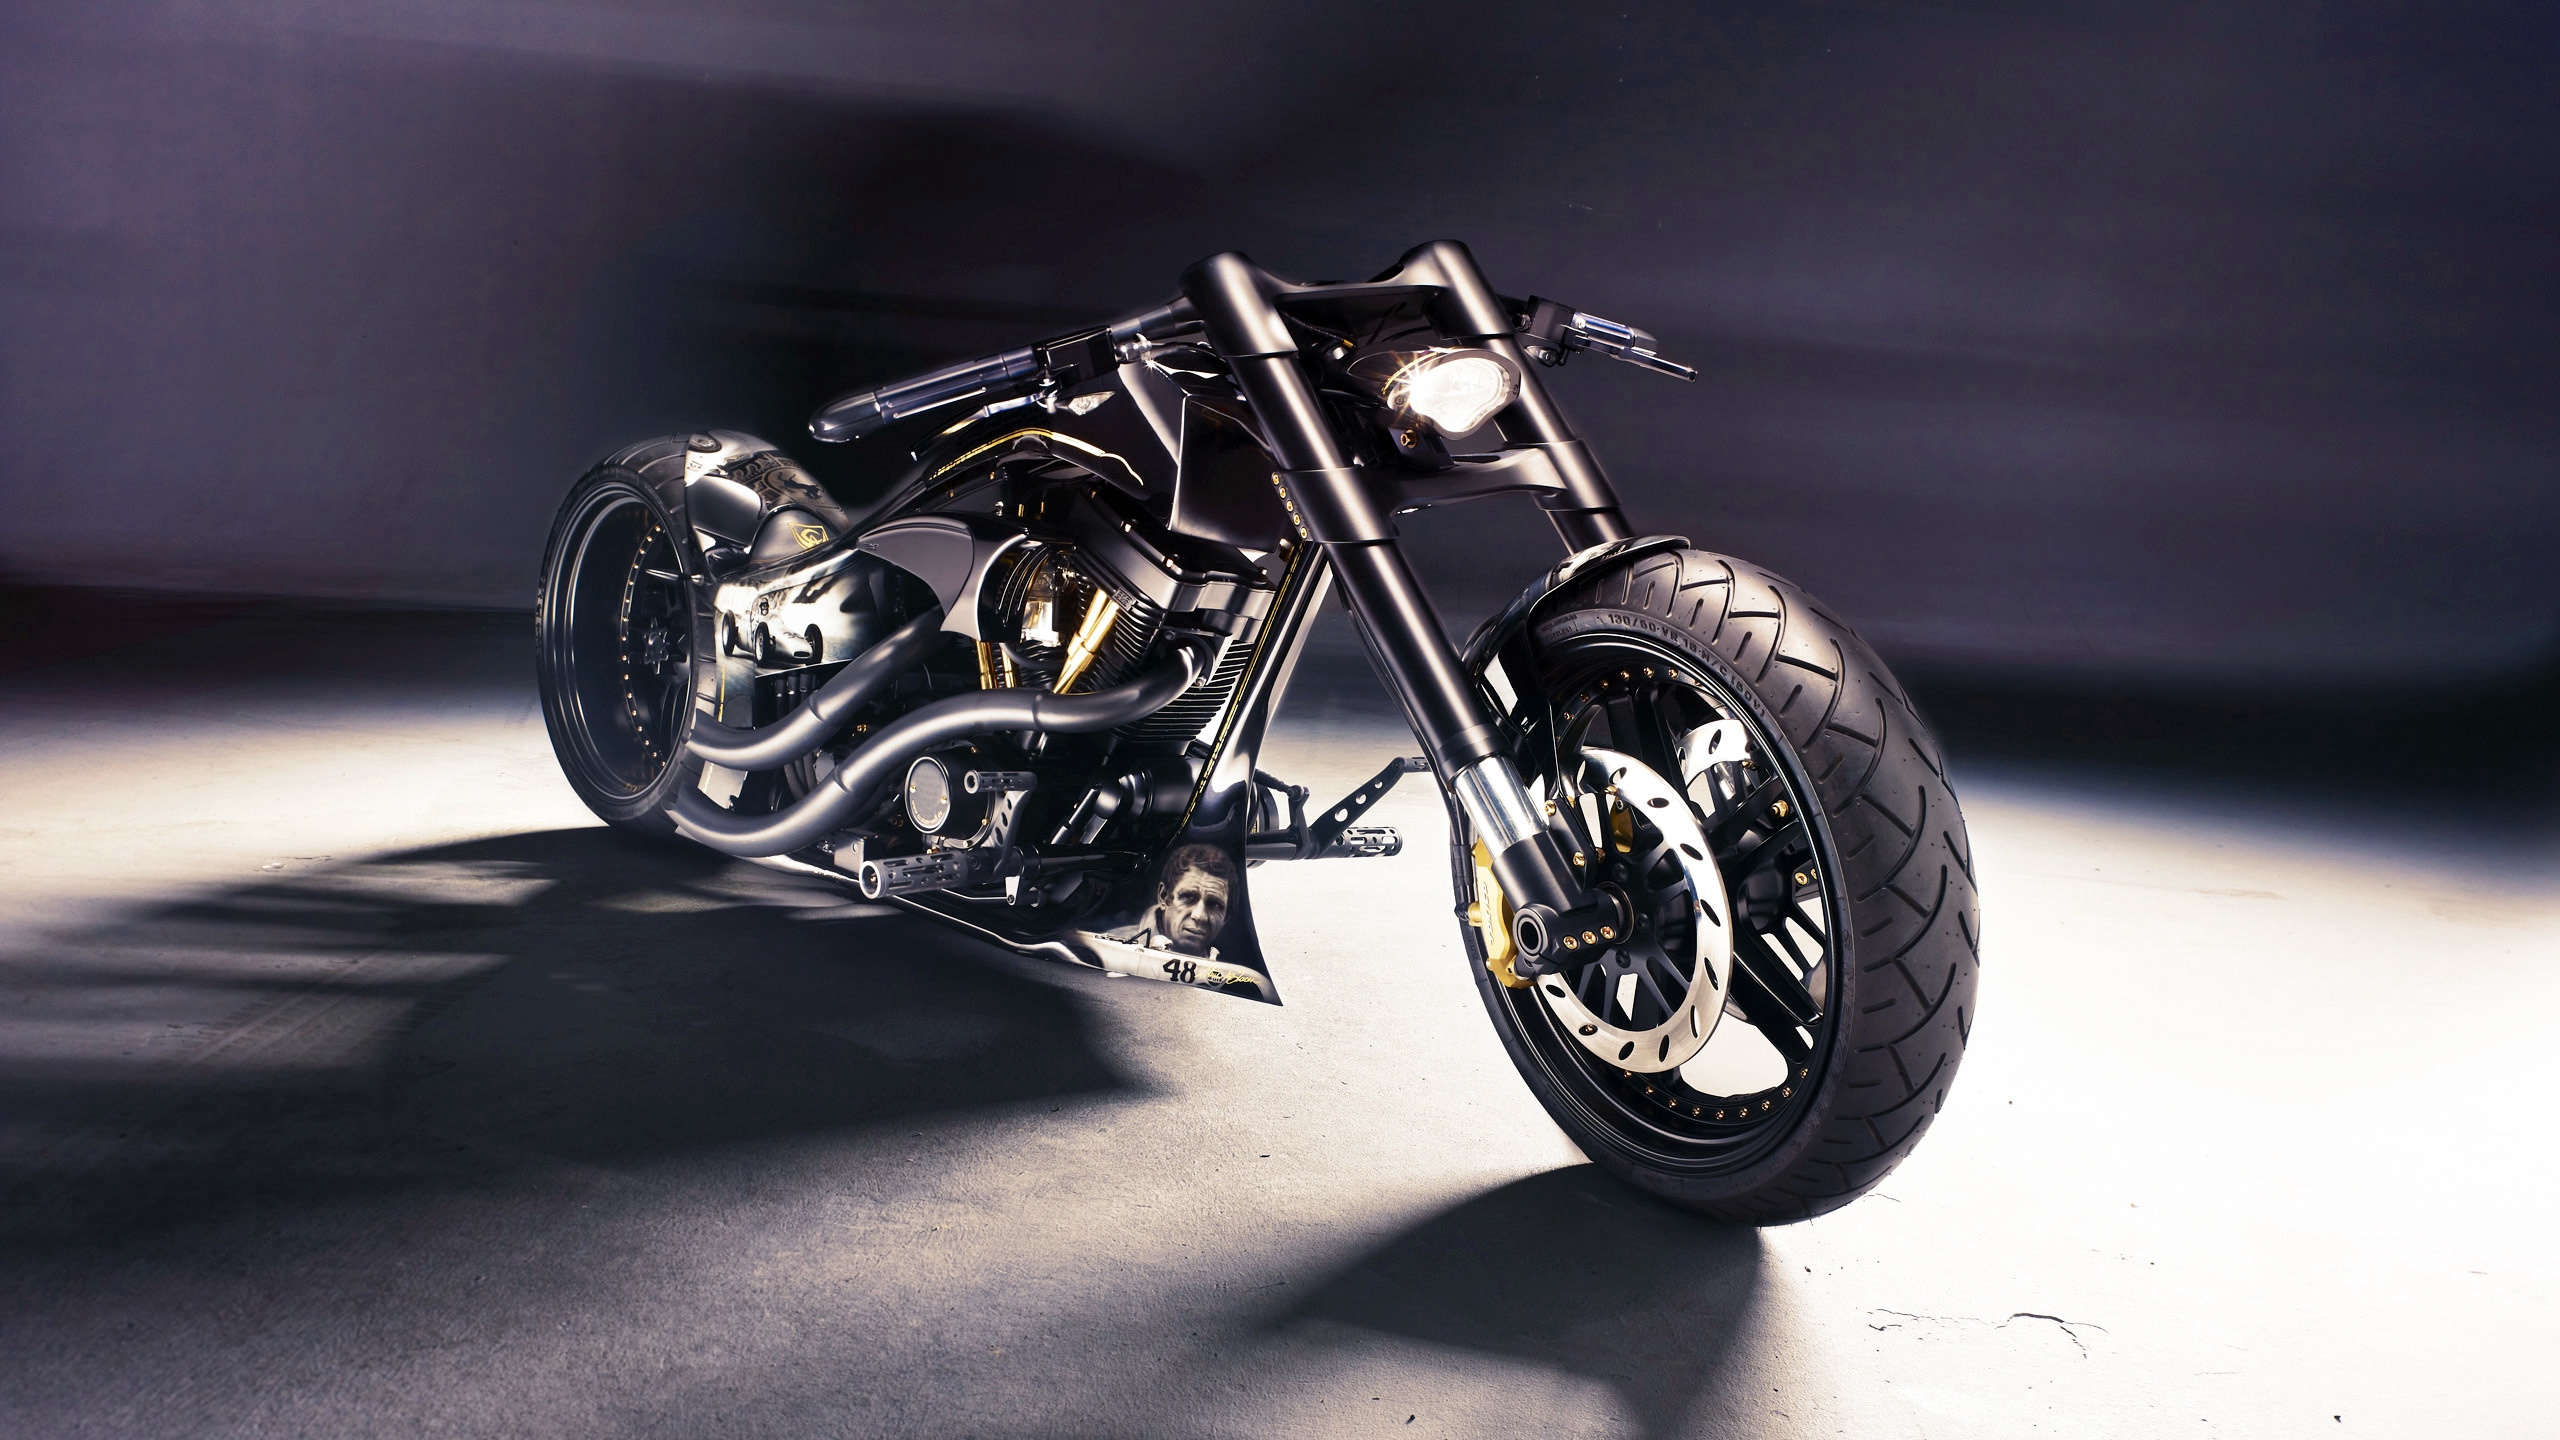 Schwarz-silbernes Cruiser-Motorrad. Wallpaper in 2560x1440 Resolution